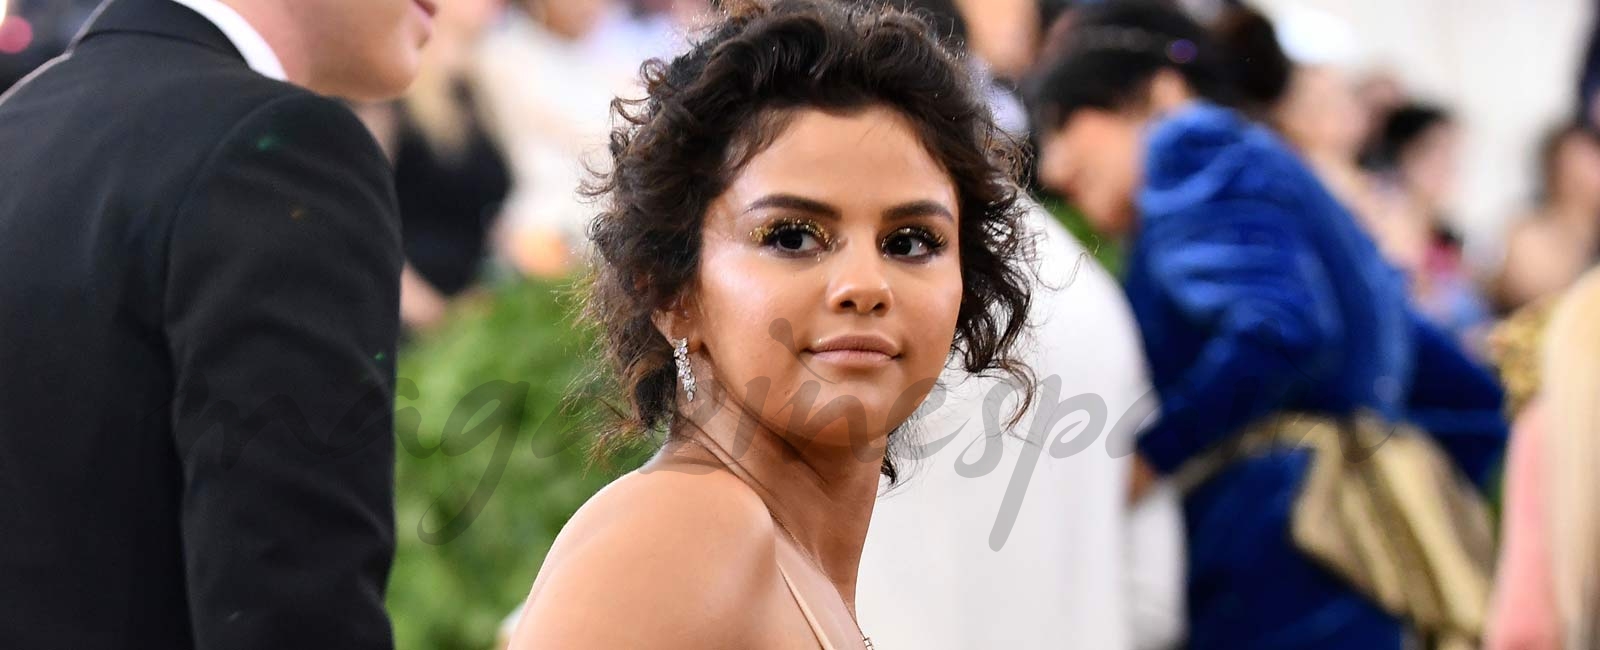 ¿Por qué se ha hecho viral el look de Selena Gómez en la Gala MET?